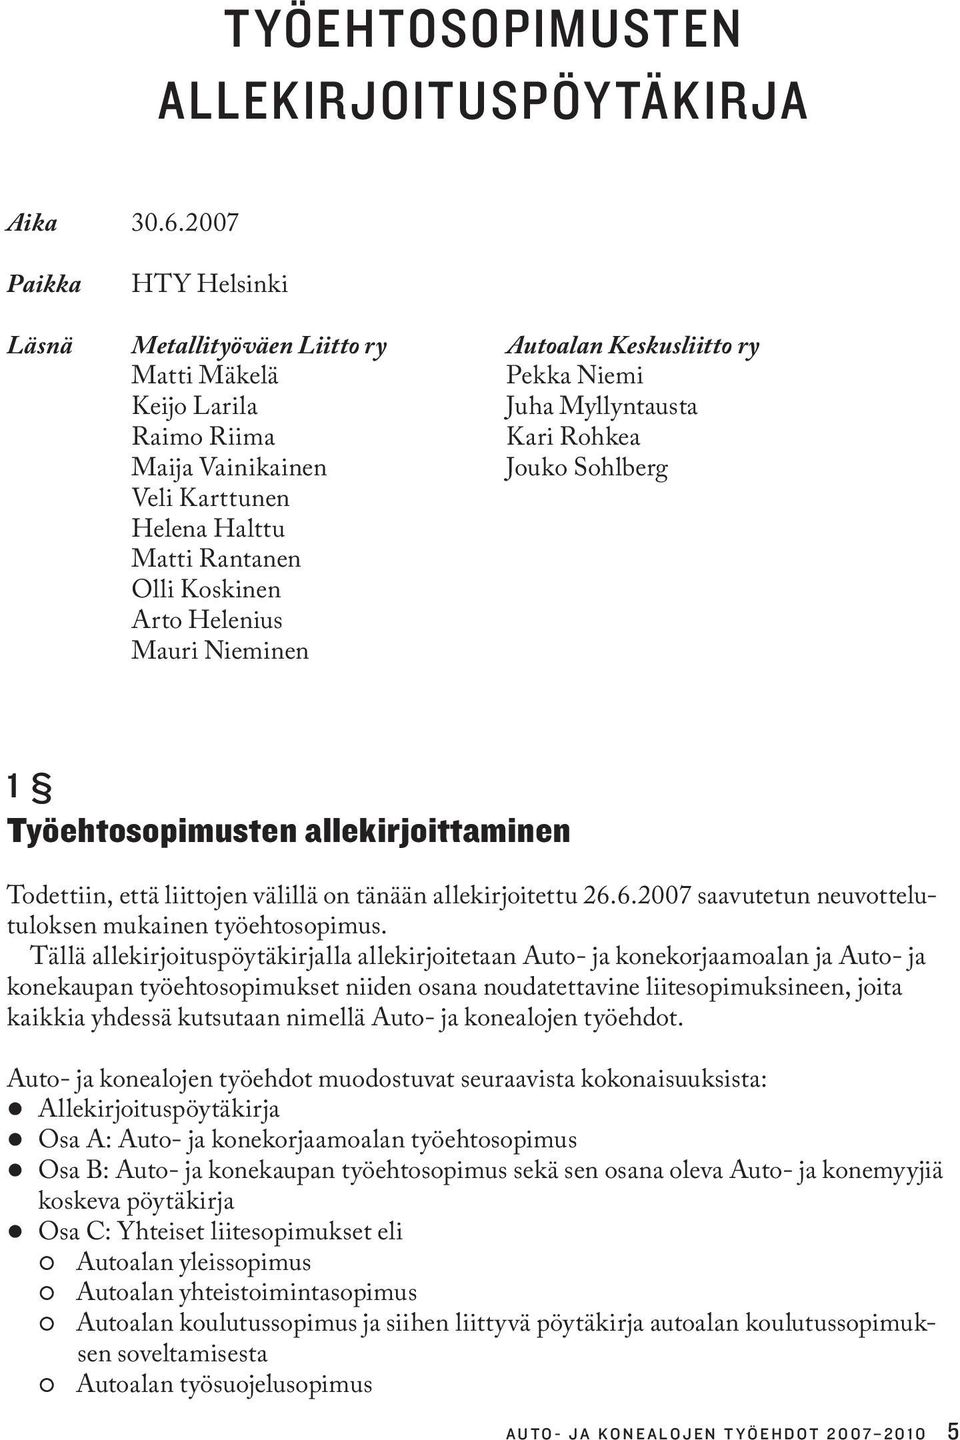 Karttunen Helena Halttu Matti Rantanen Olli Koskinen Arto Helenius Mauri Nieminen 1 Työehtosopimusten allekirjoittaminen Todettiin, että liittojen välillä on tänään allekirjoitettu 26.